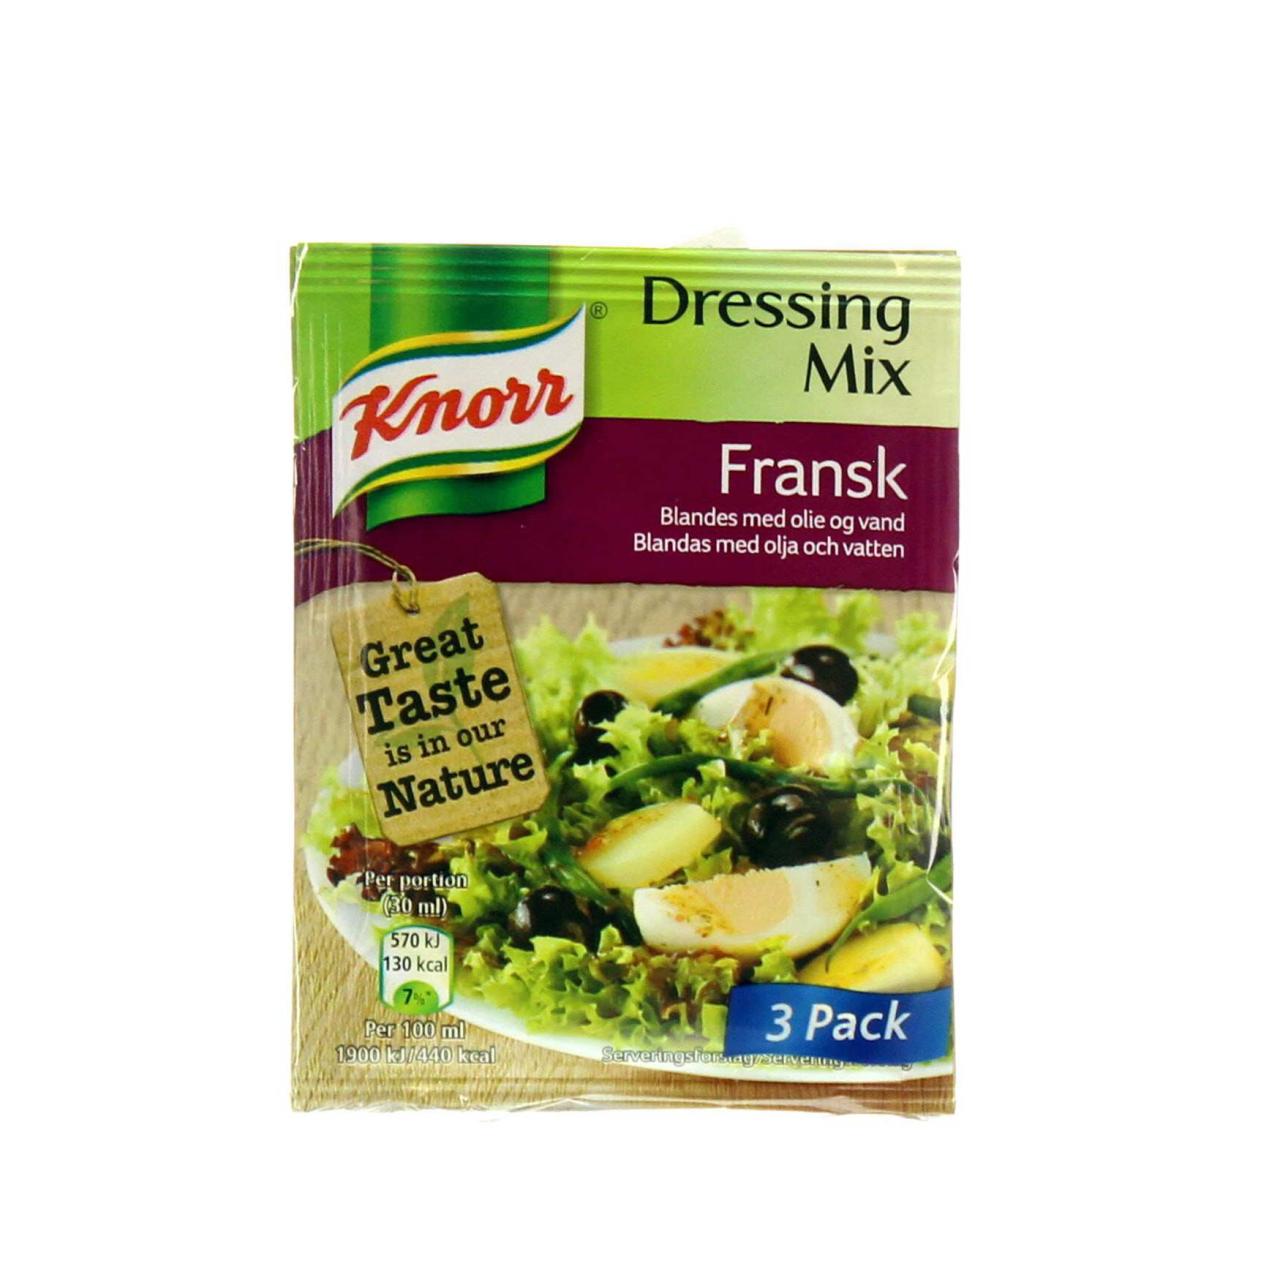 Knorr Dressing Mix Fransk 3x9g